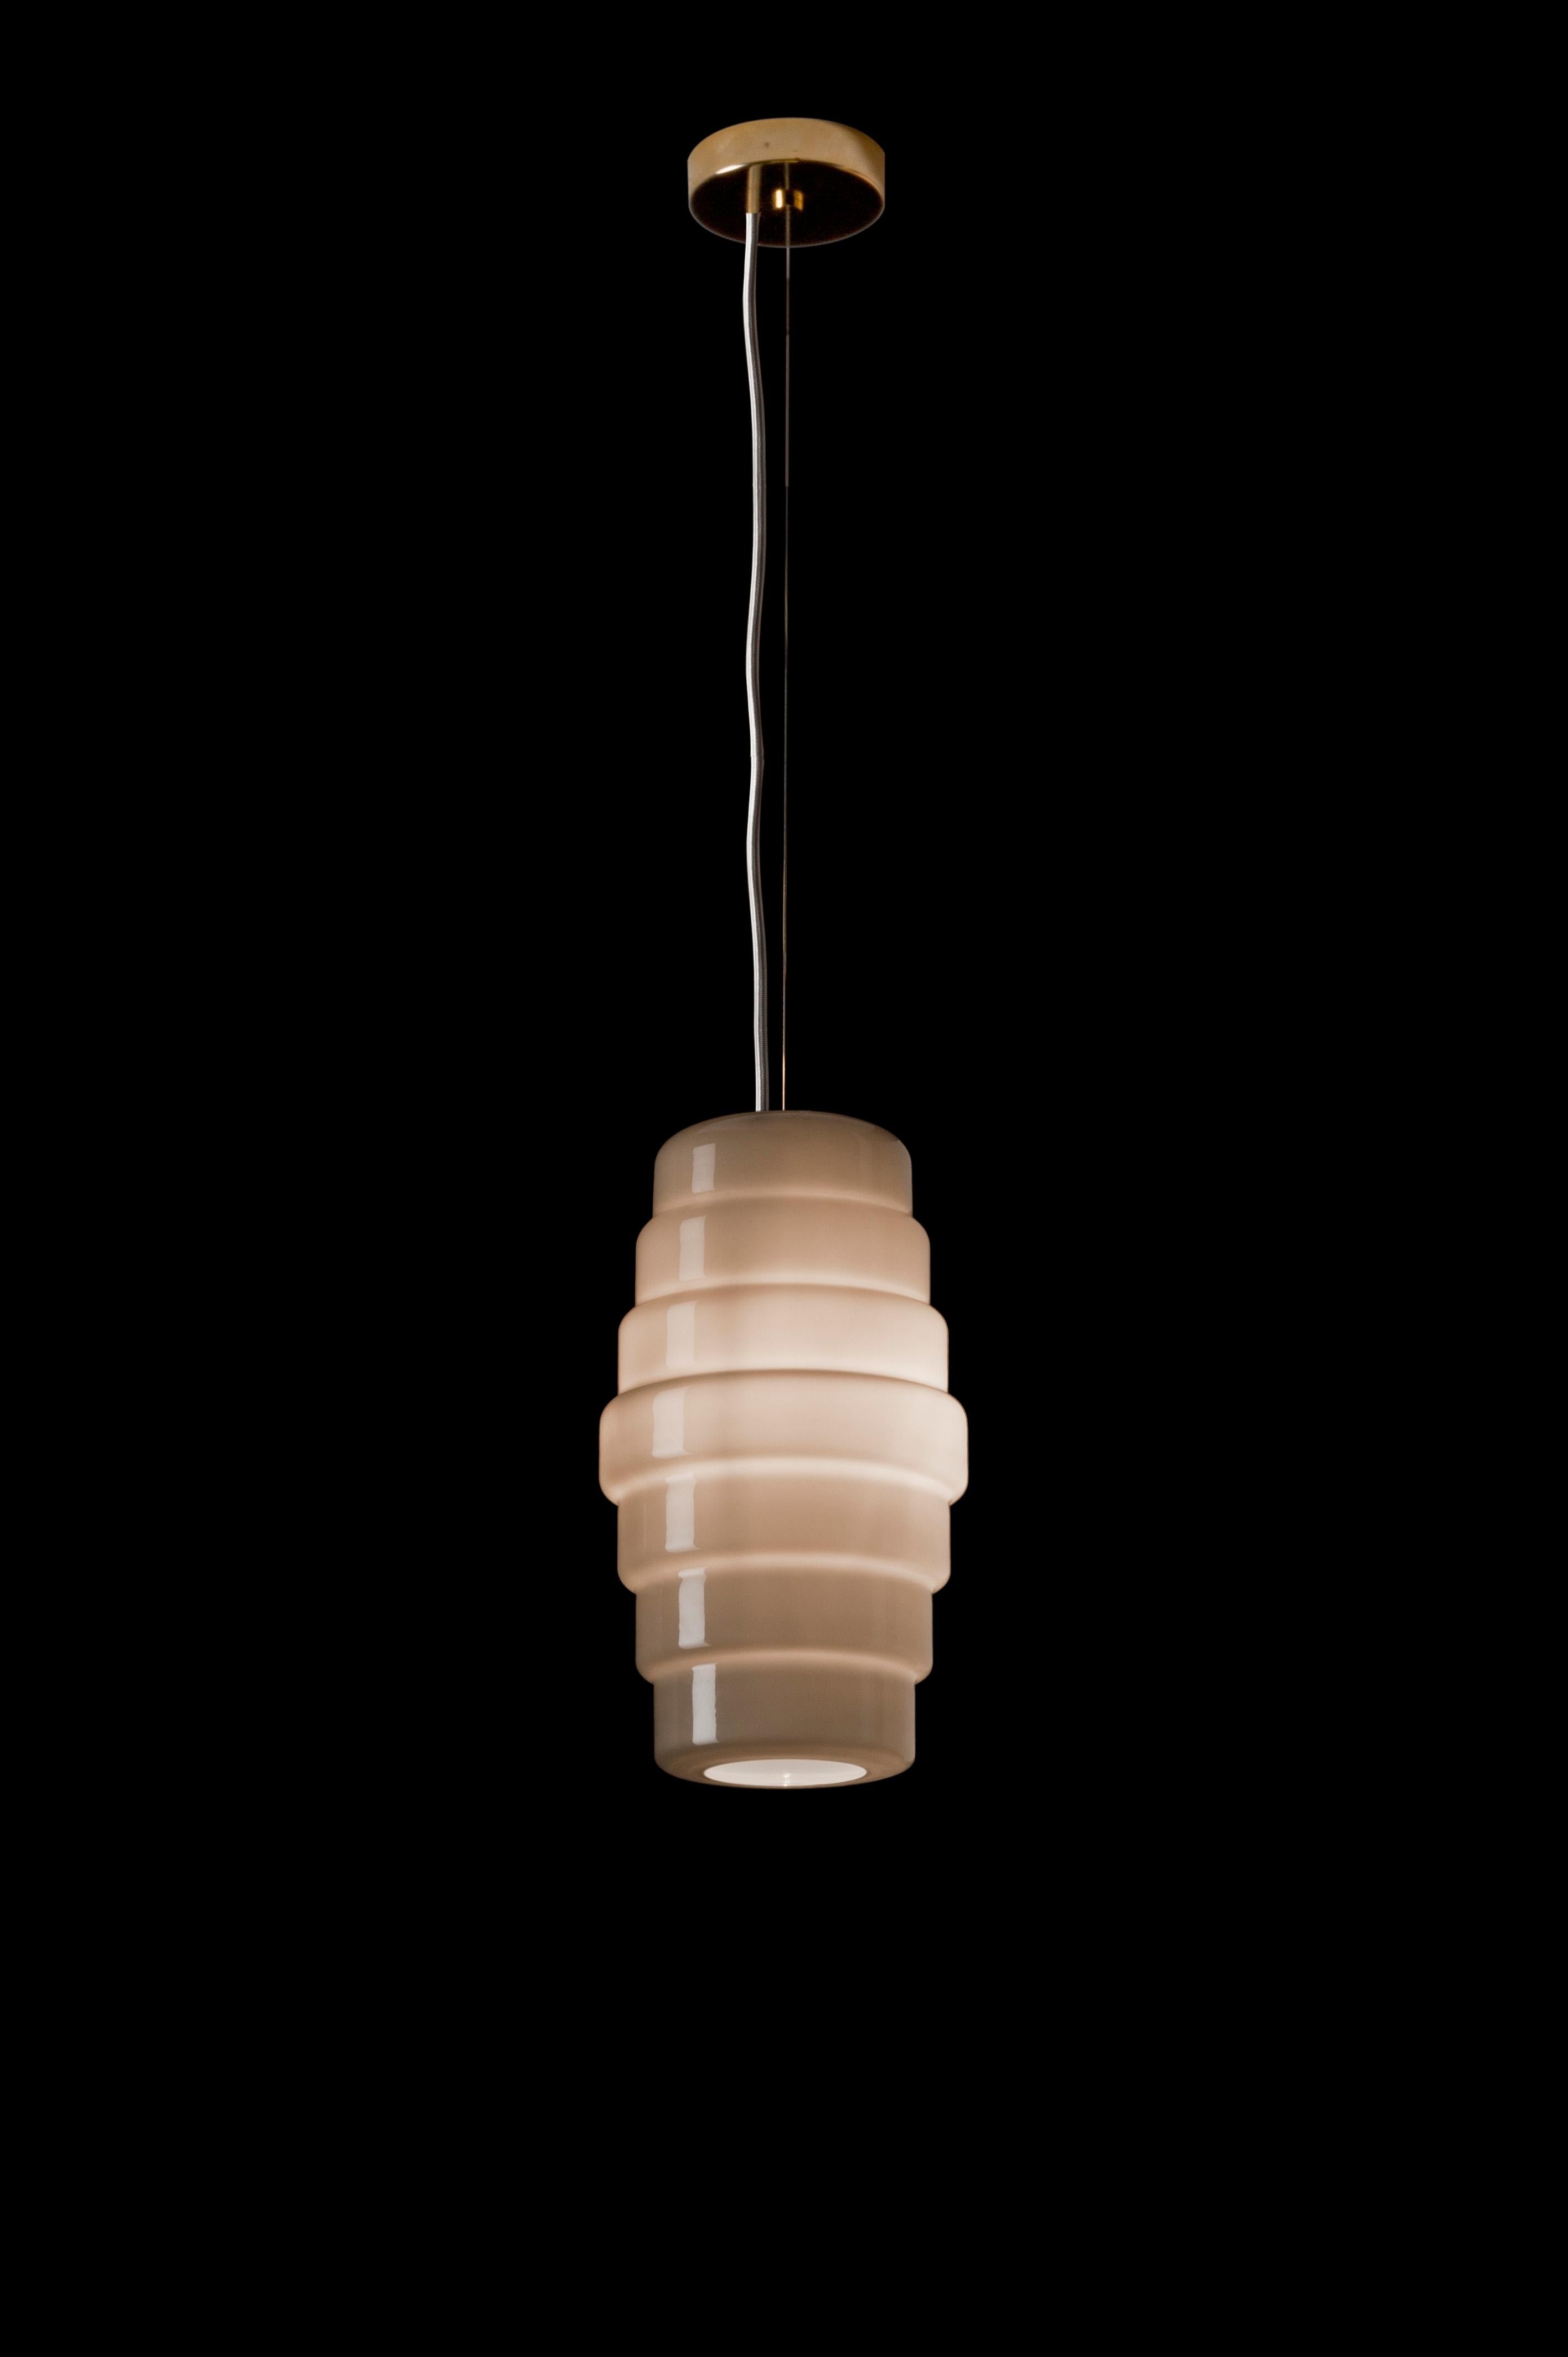 La lámpara colgante Zoe, diseñada por Doriana and Massimiliano Fuksas y fabricada por Venini, tiene forma de linterna. Disponible en dos tamaños diferentes. Sólo para uso en interiores.

Dimensiones: Ø 30 cm, H 52,5 cm.